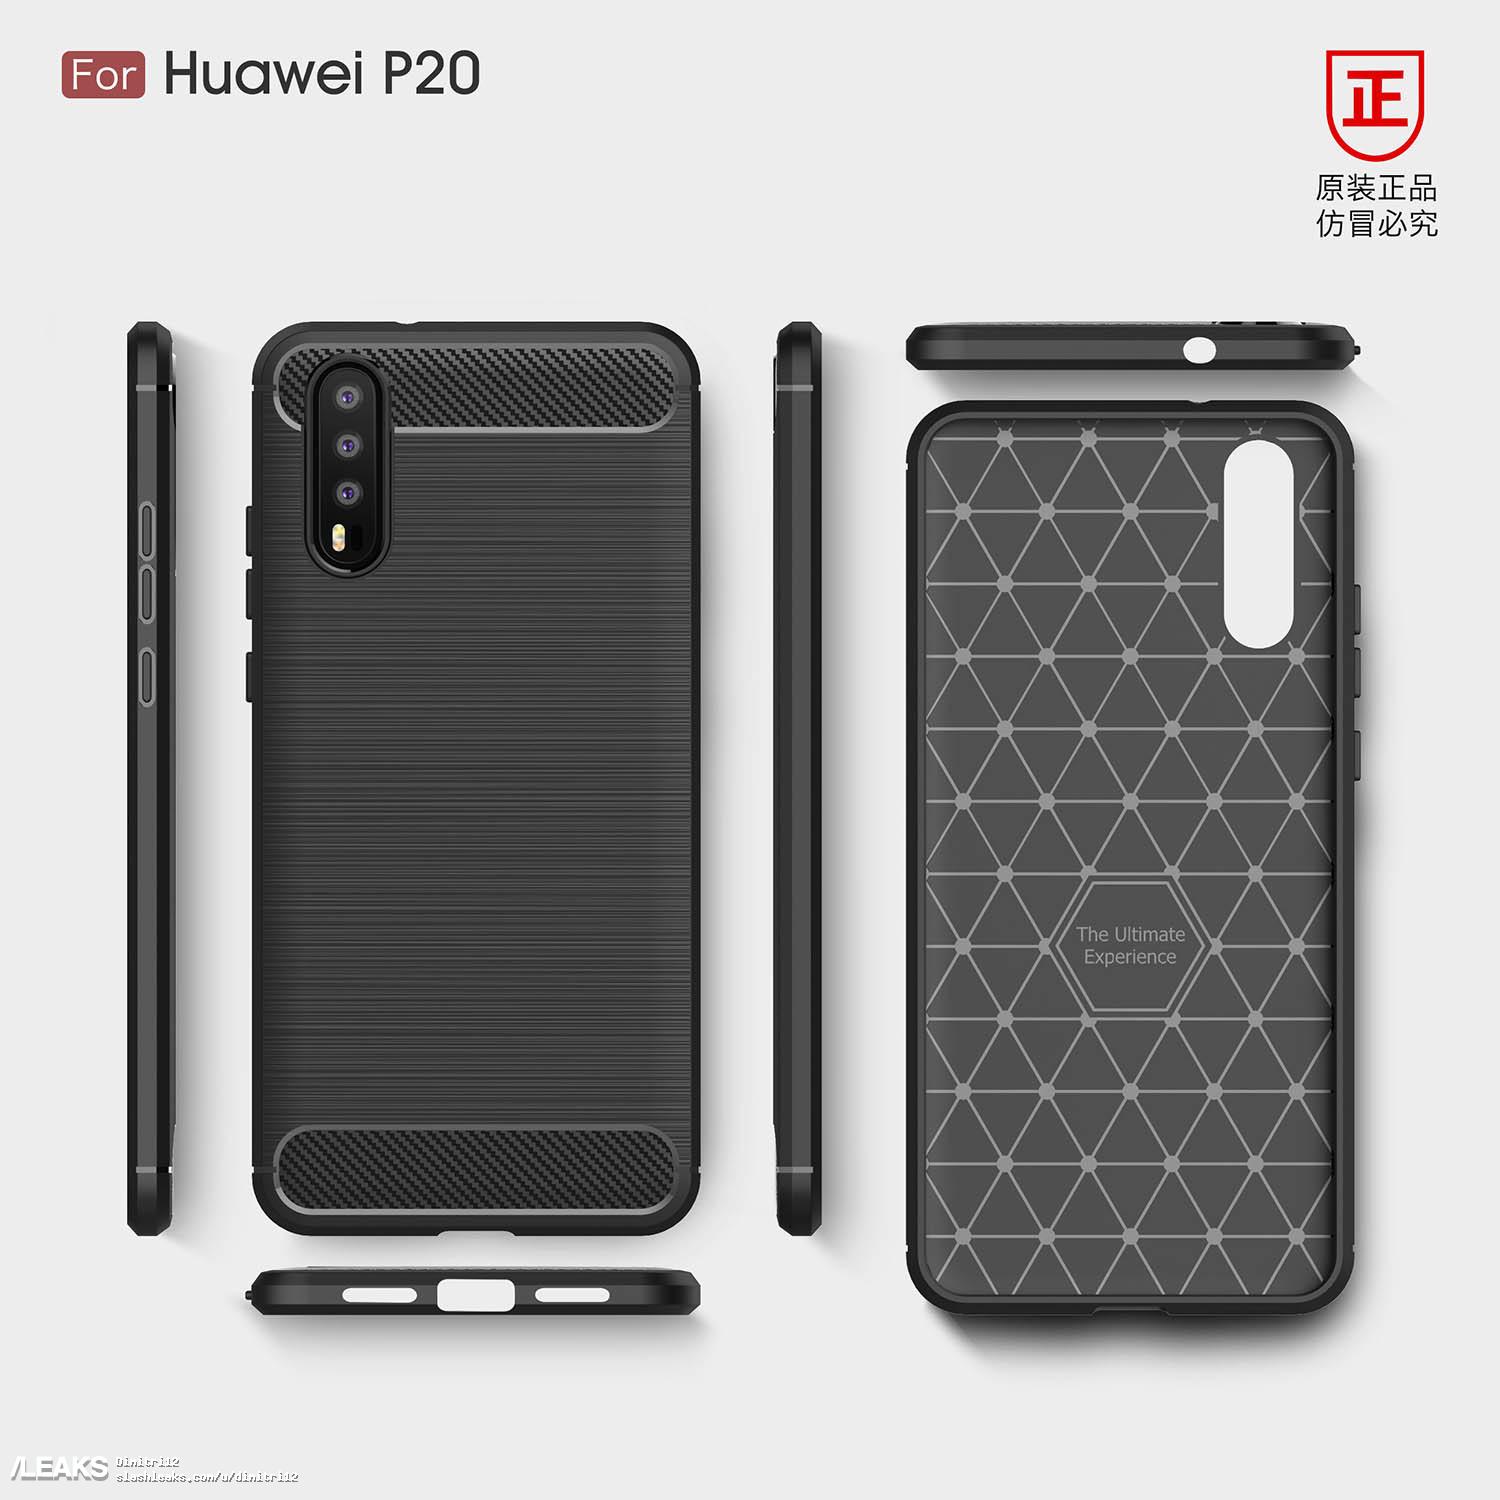 Huawei P20 lộ thiết
kế thông qua nhà sản xuất phụ kiện ốp lưng với cụm 3 camera
chính